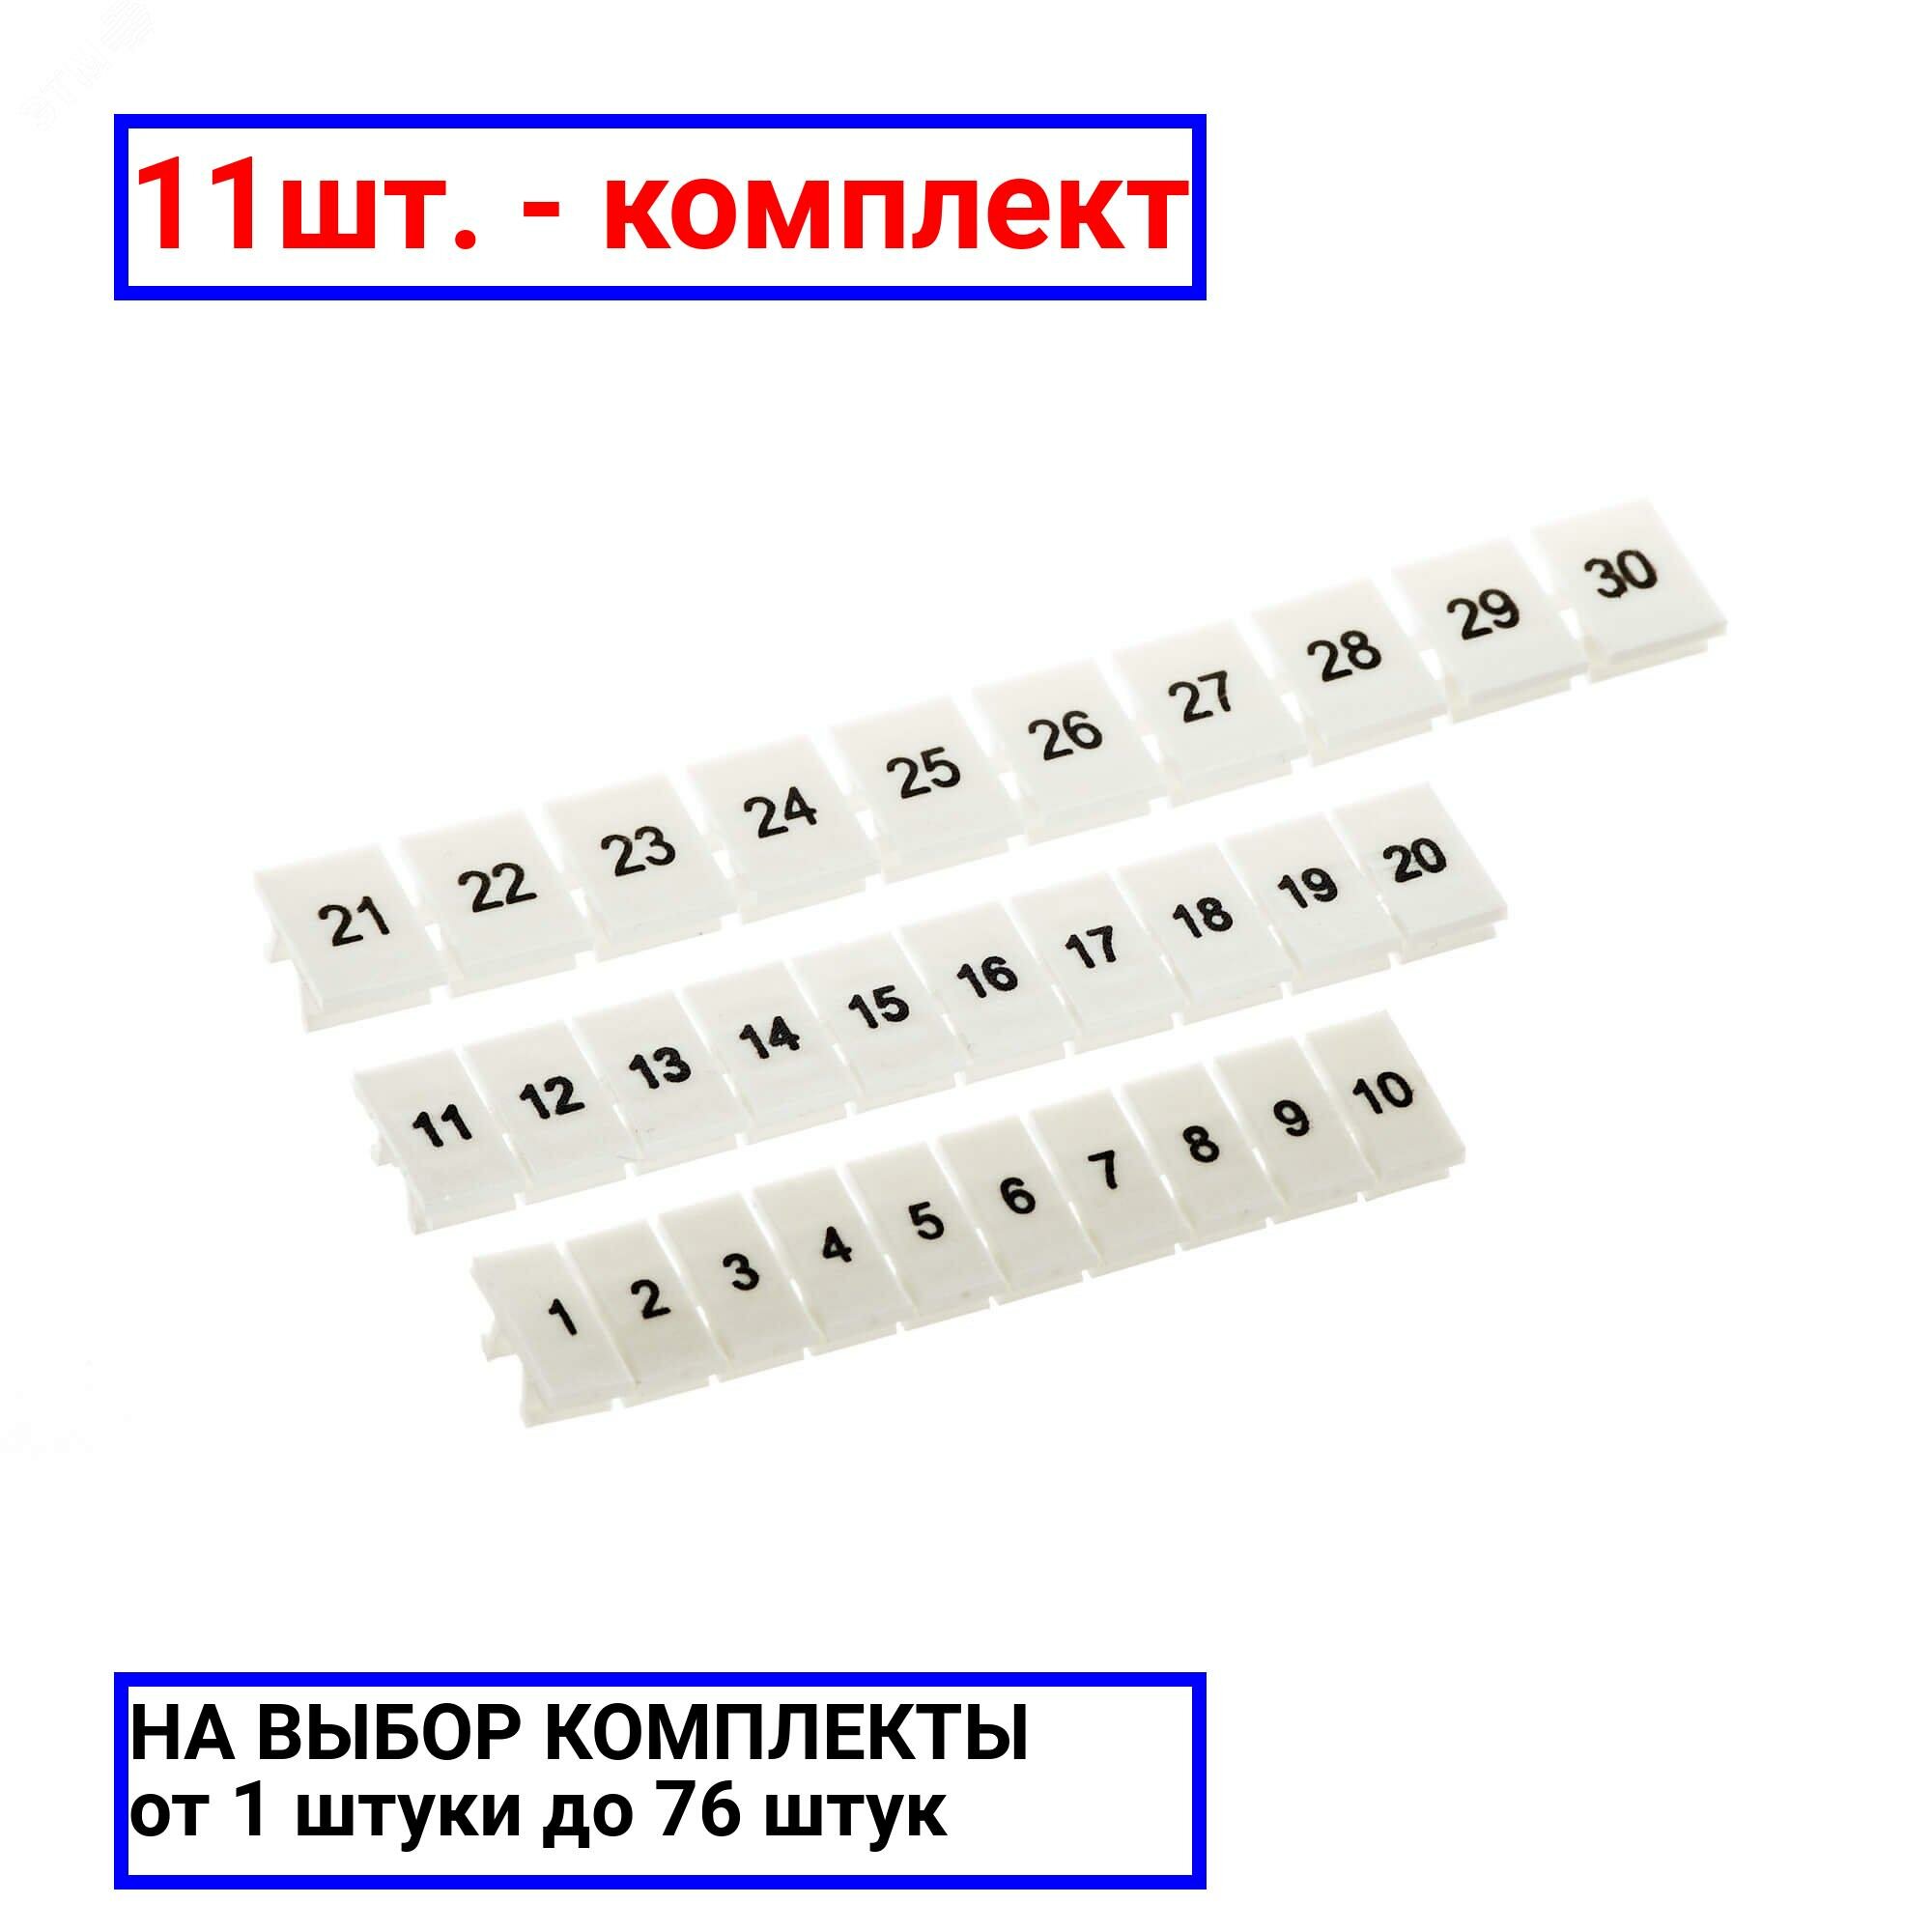 31шт. - Маркировка для клемм ширина 8 мм от 1 до 10 горизонтальная ориентация / DKC; арт. NUPUTUK-8-1-10H; оригинал / - комплект 31шт